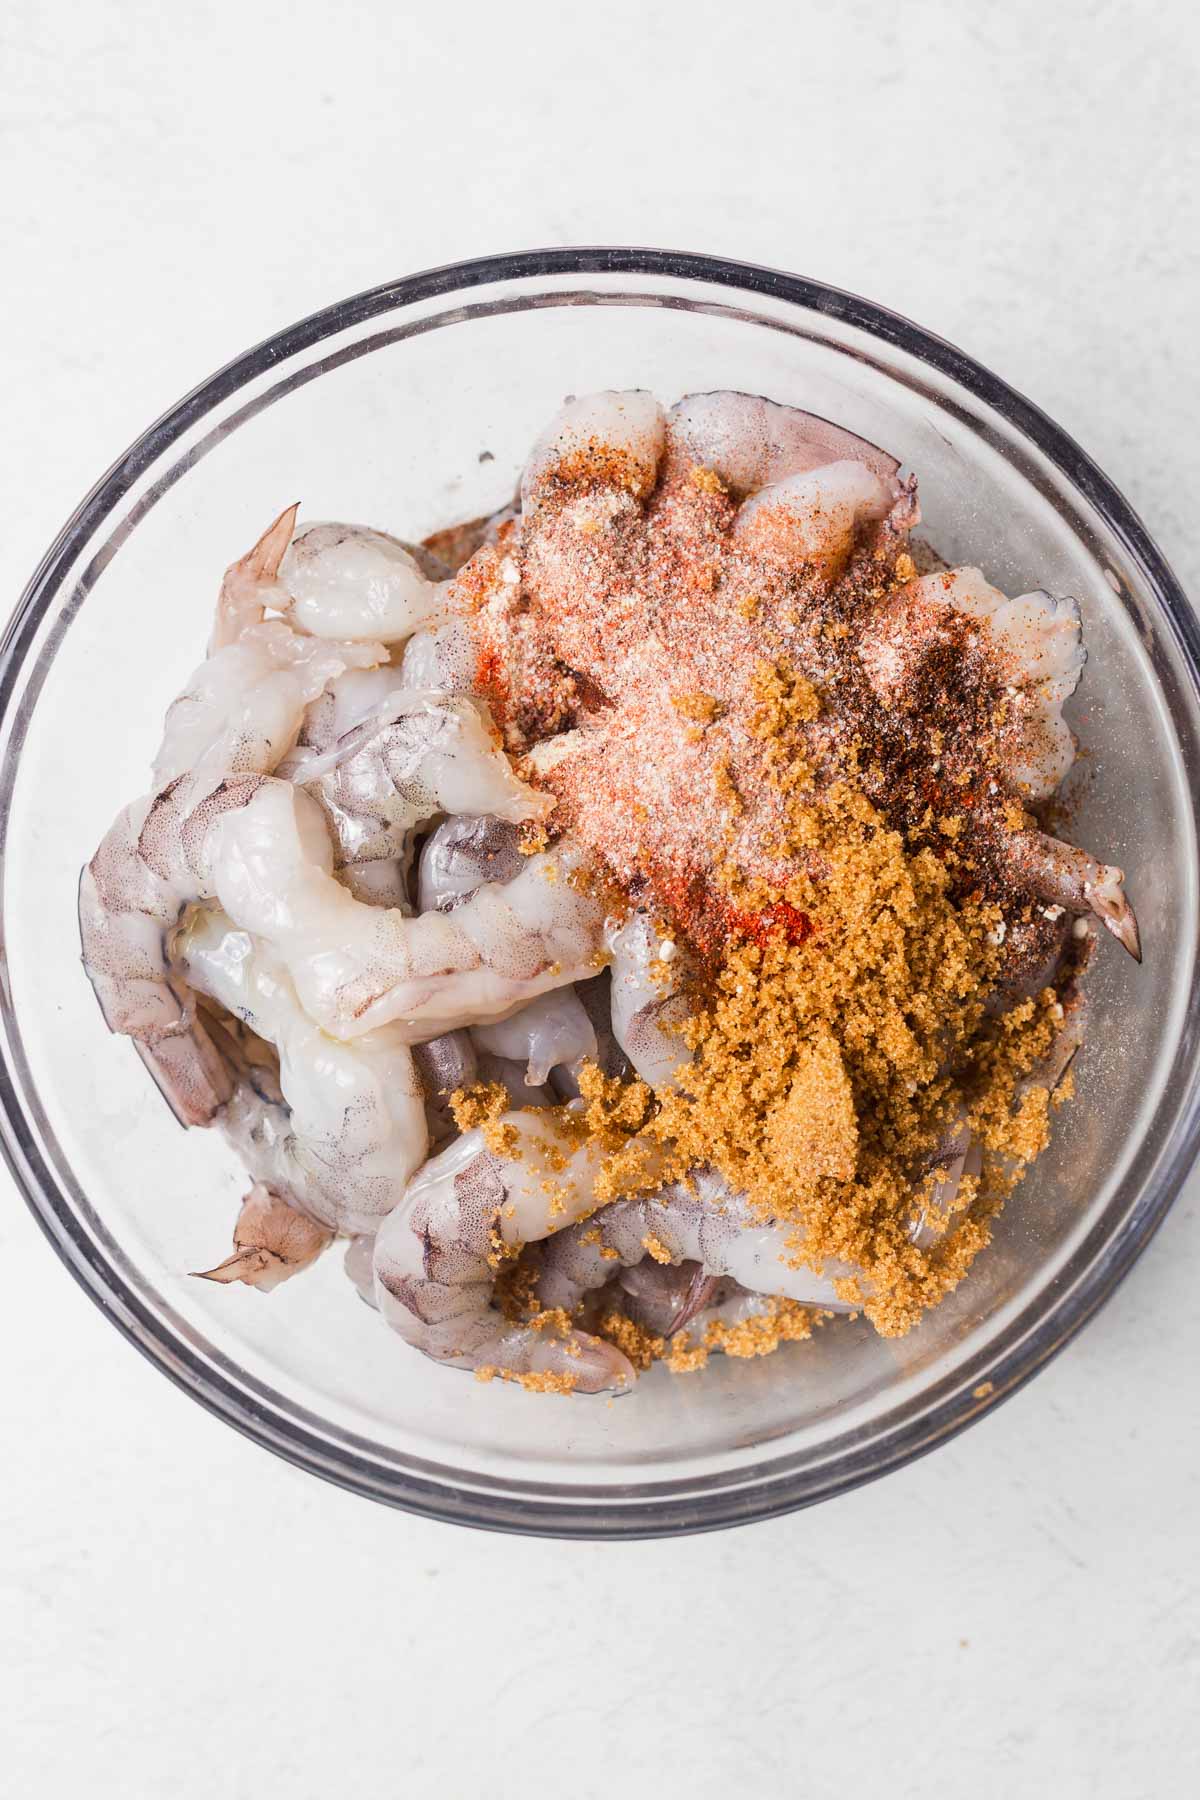 shrimp and seasonings in a bowl.